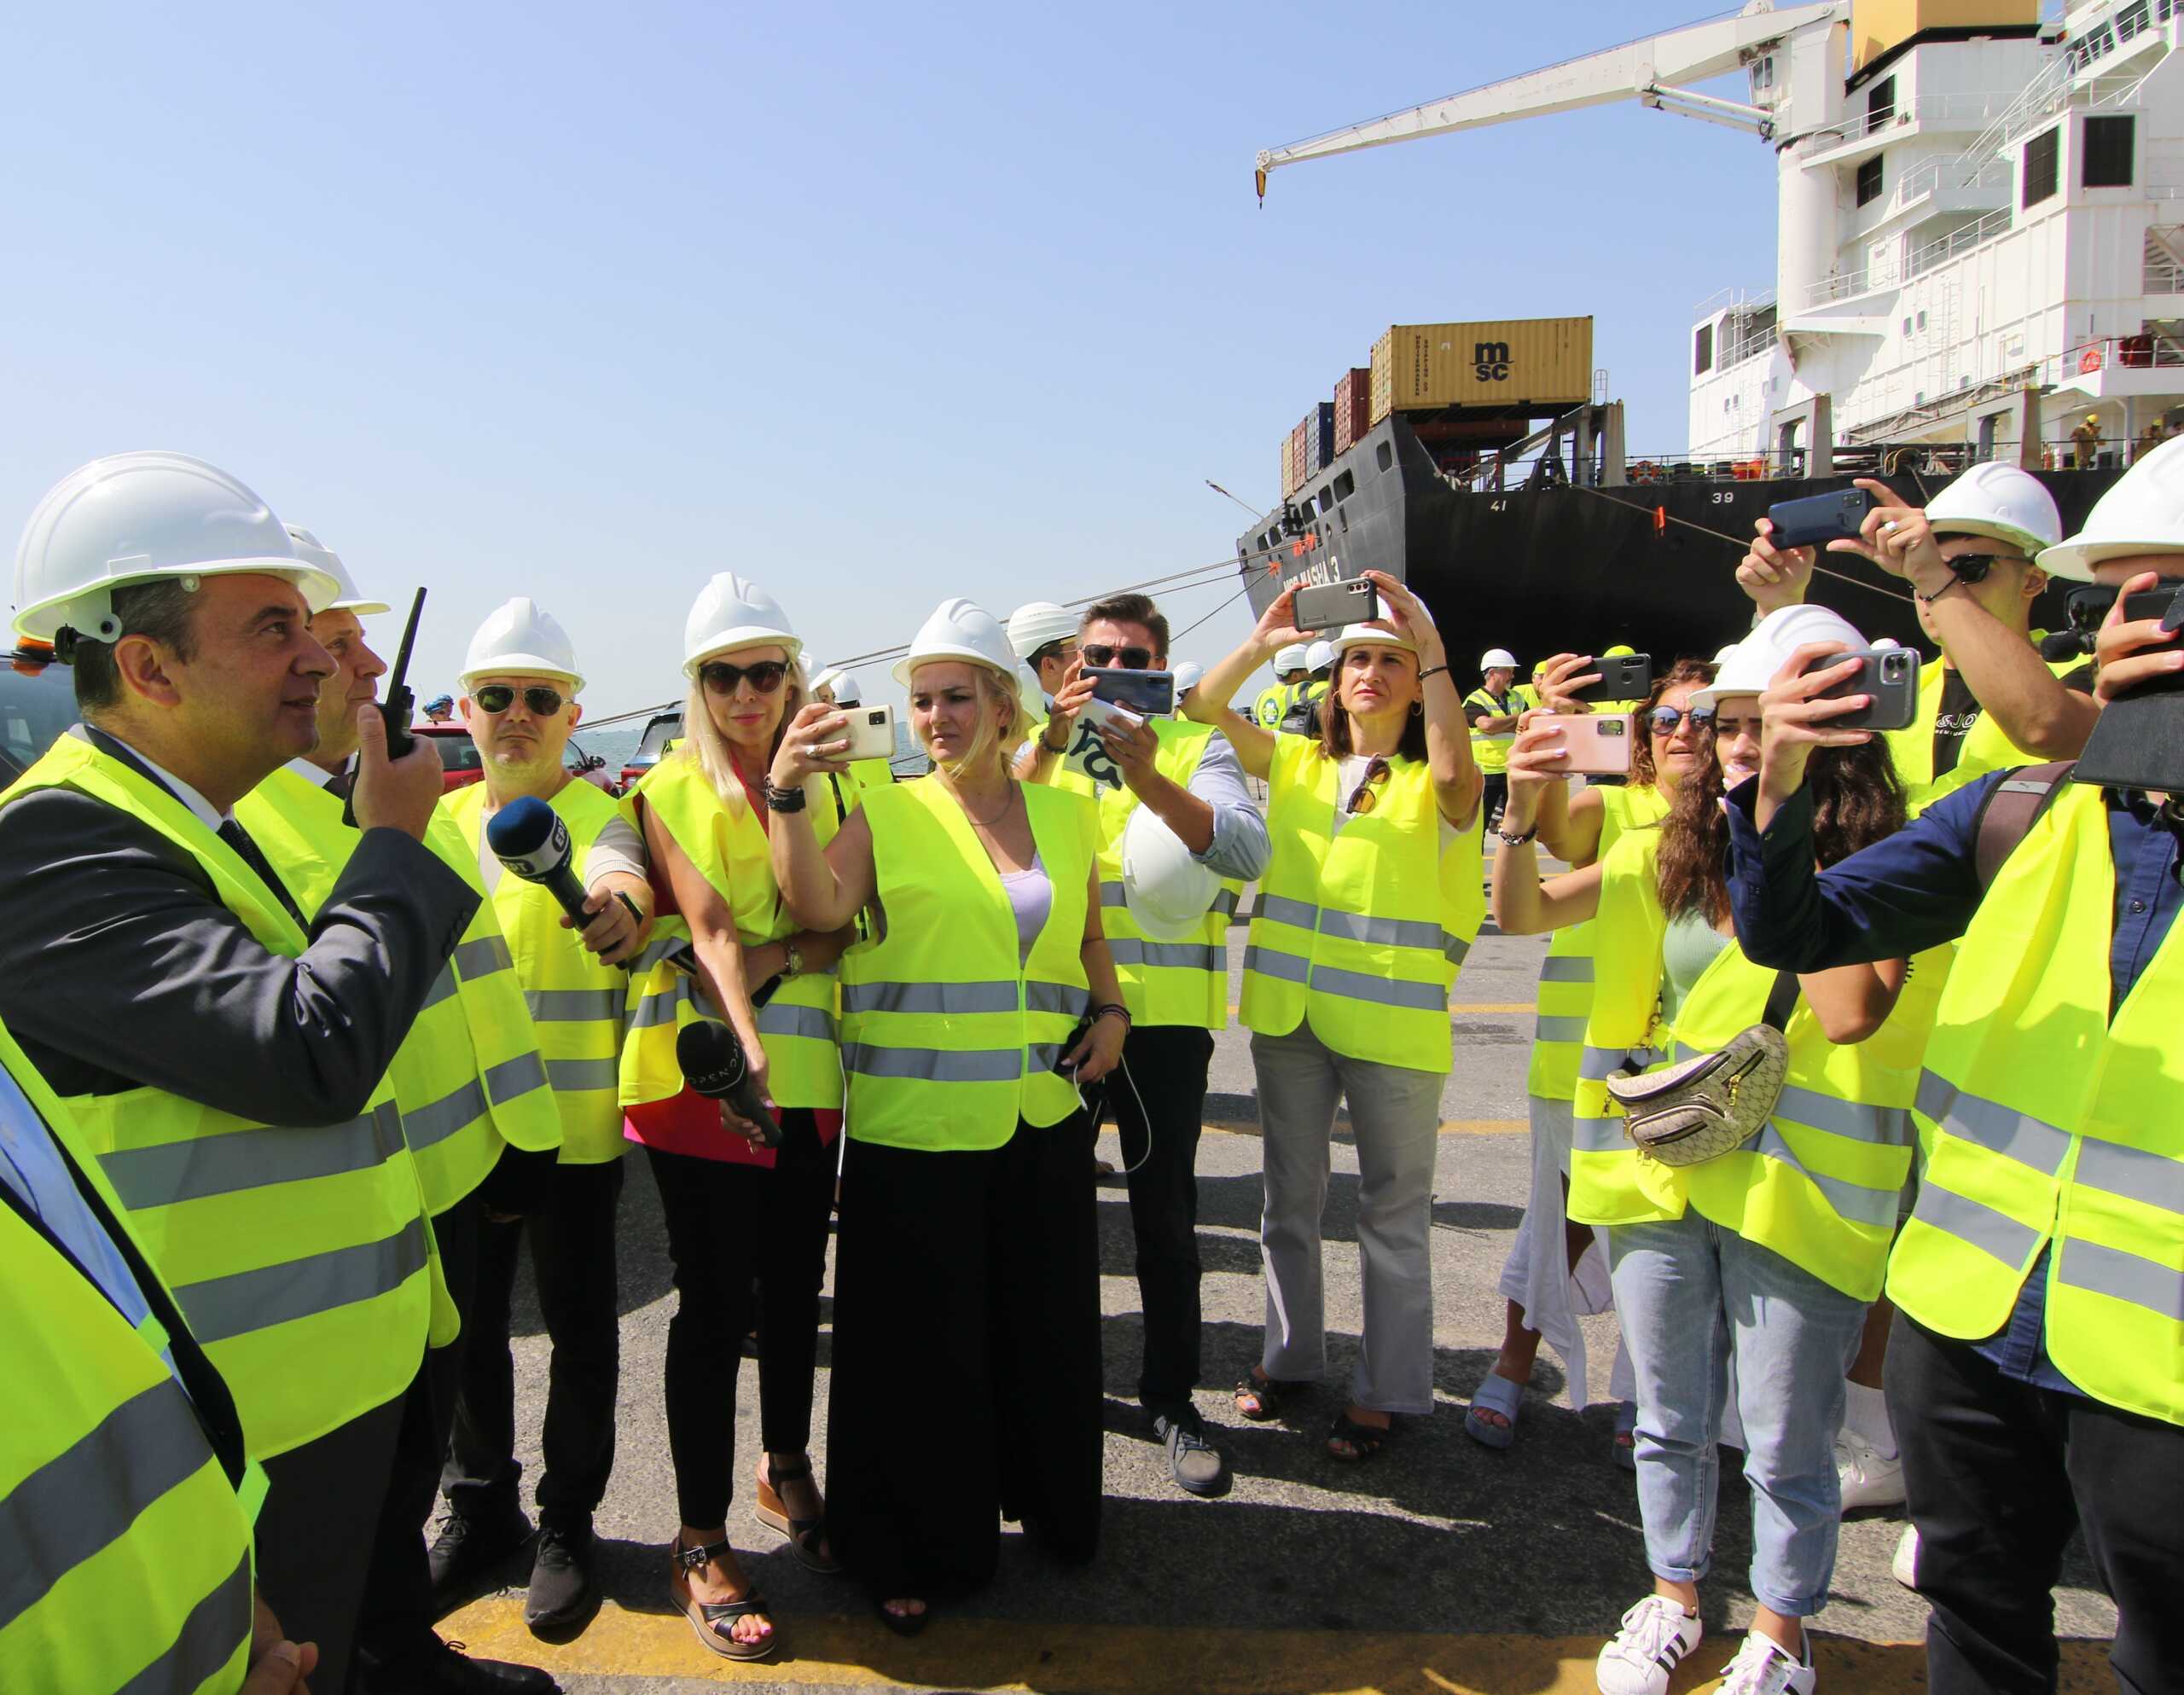 Λιμάνι Θεσσαλονίκης: Ο Υπουργός Ναυτιλίας εγκαινίασε δύο νέες γερανογέφυρες αξίας 15,7 εκατ. ευρώ